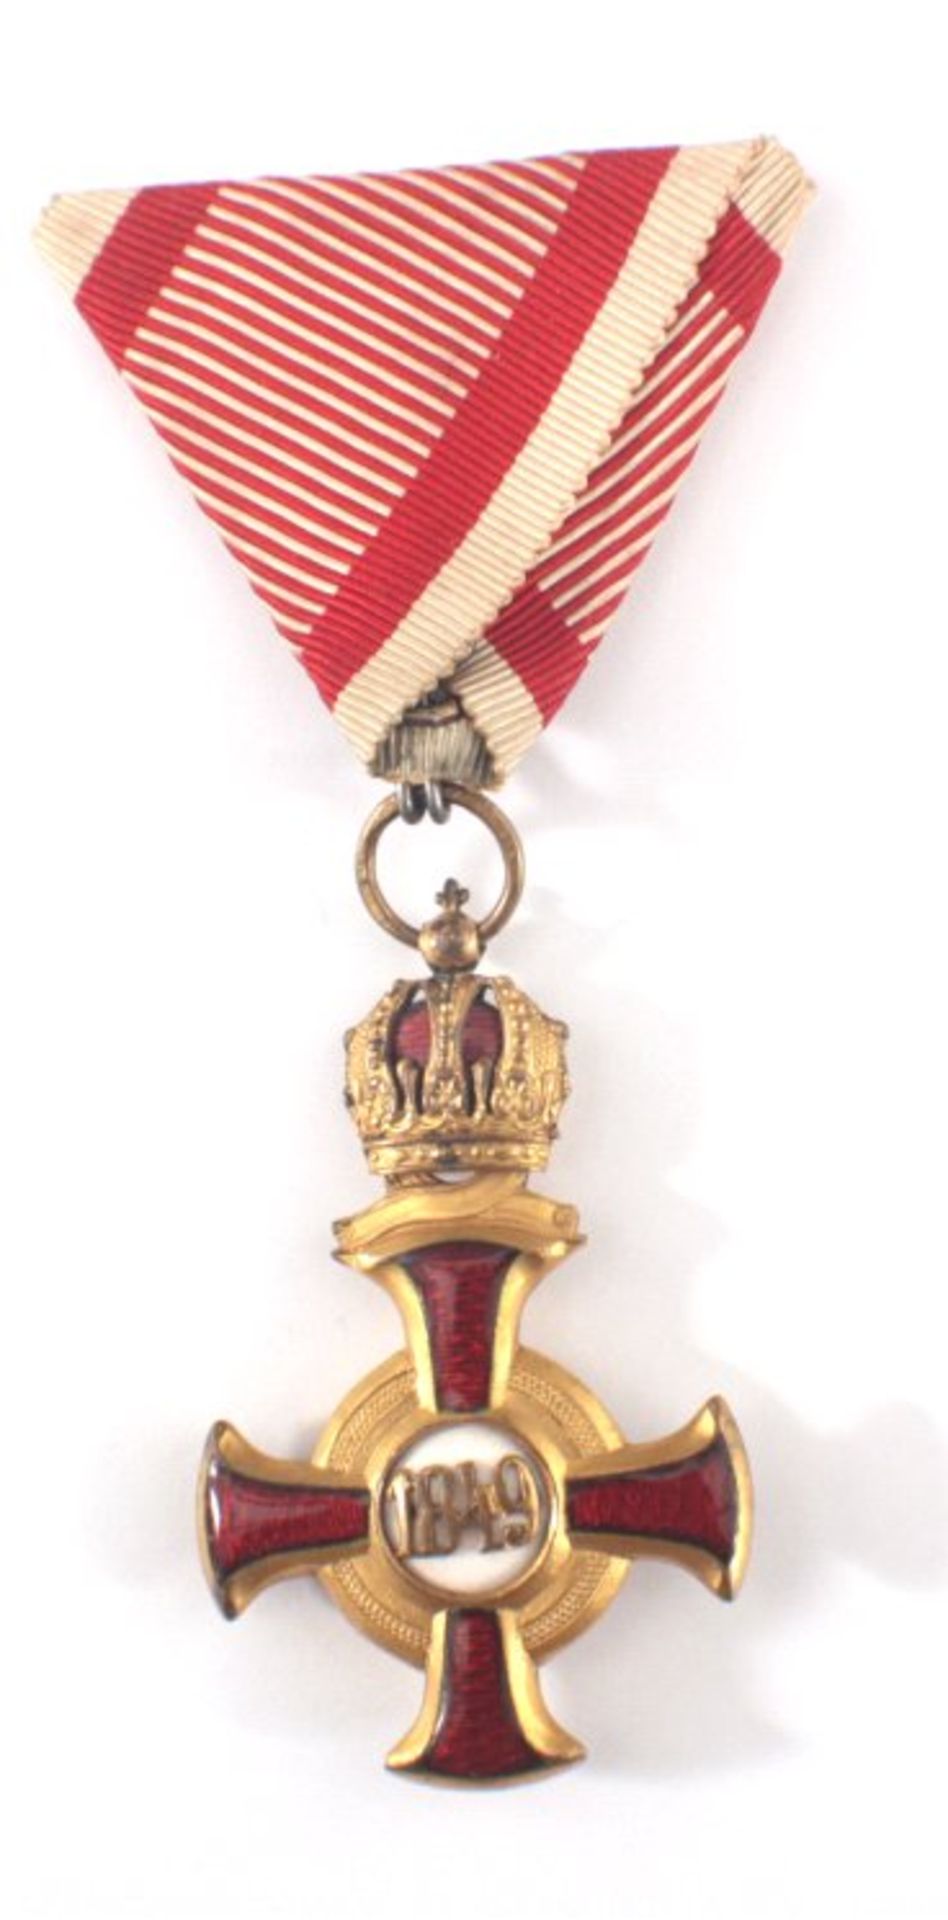 Goldenes Verdienstkreuz mit Krone, WK I, ÖsterreichViribus Unitis, 1916, Orden an ponceaurot-